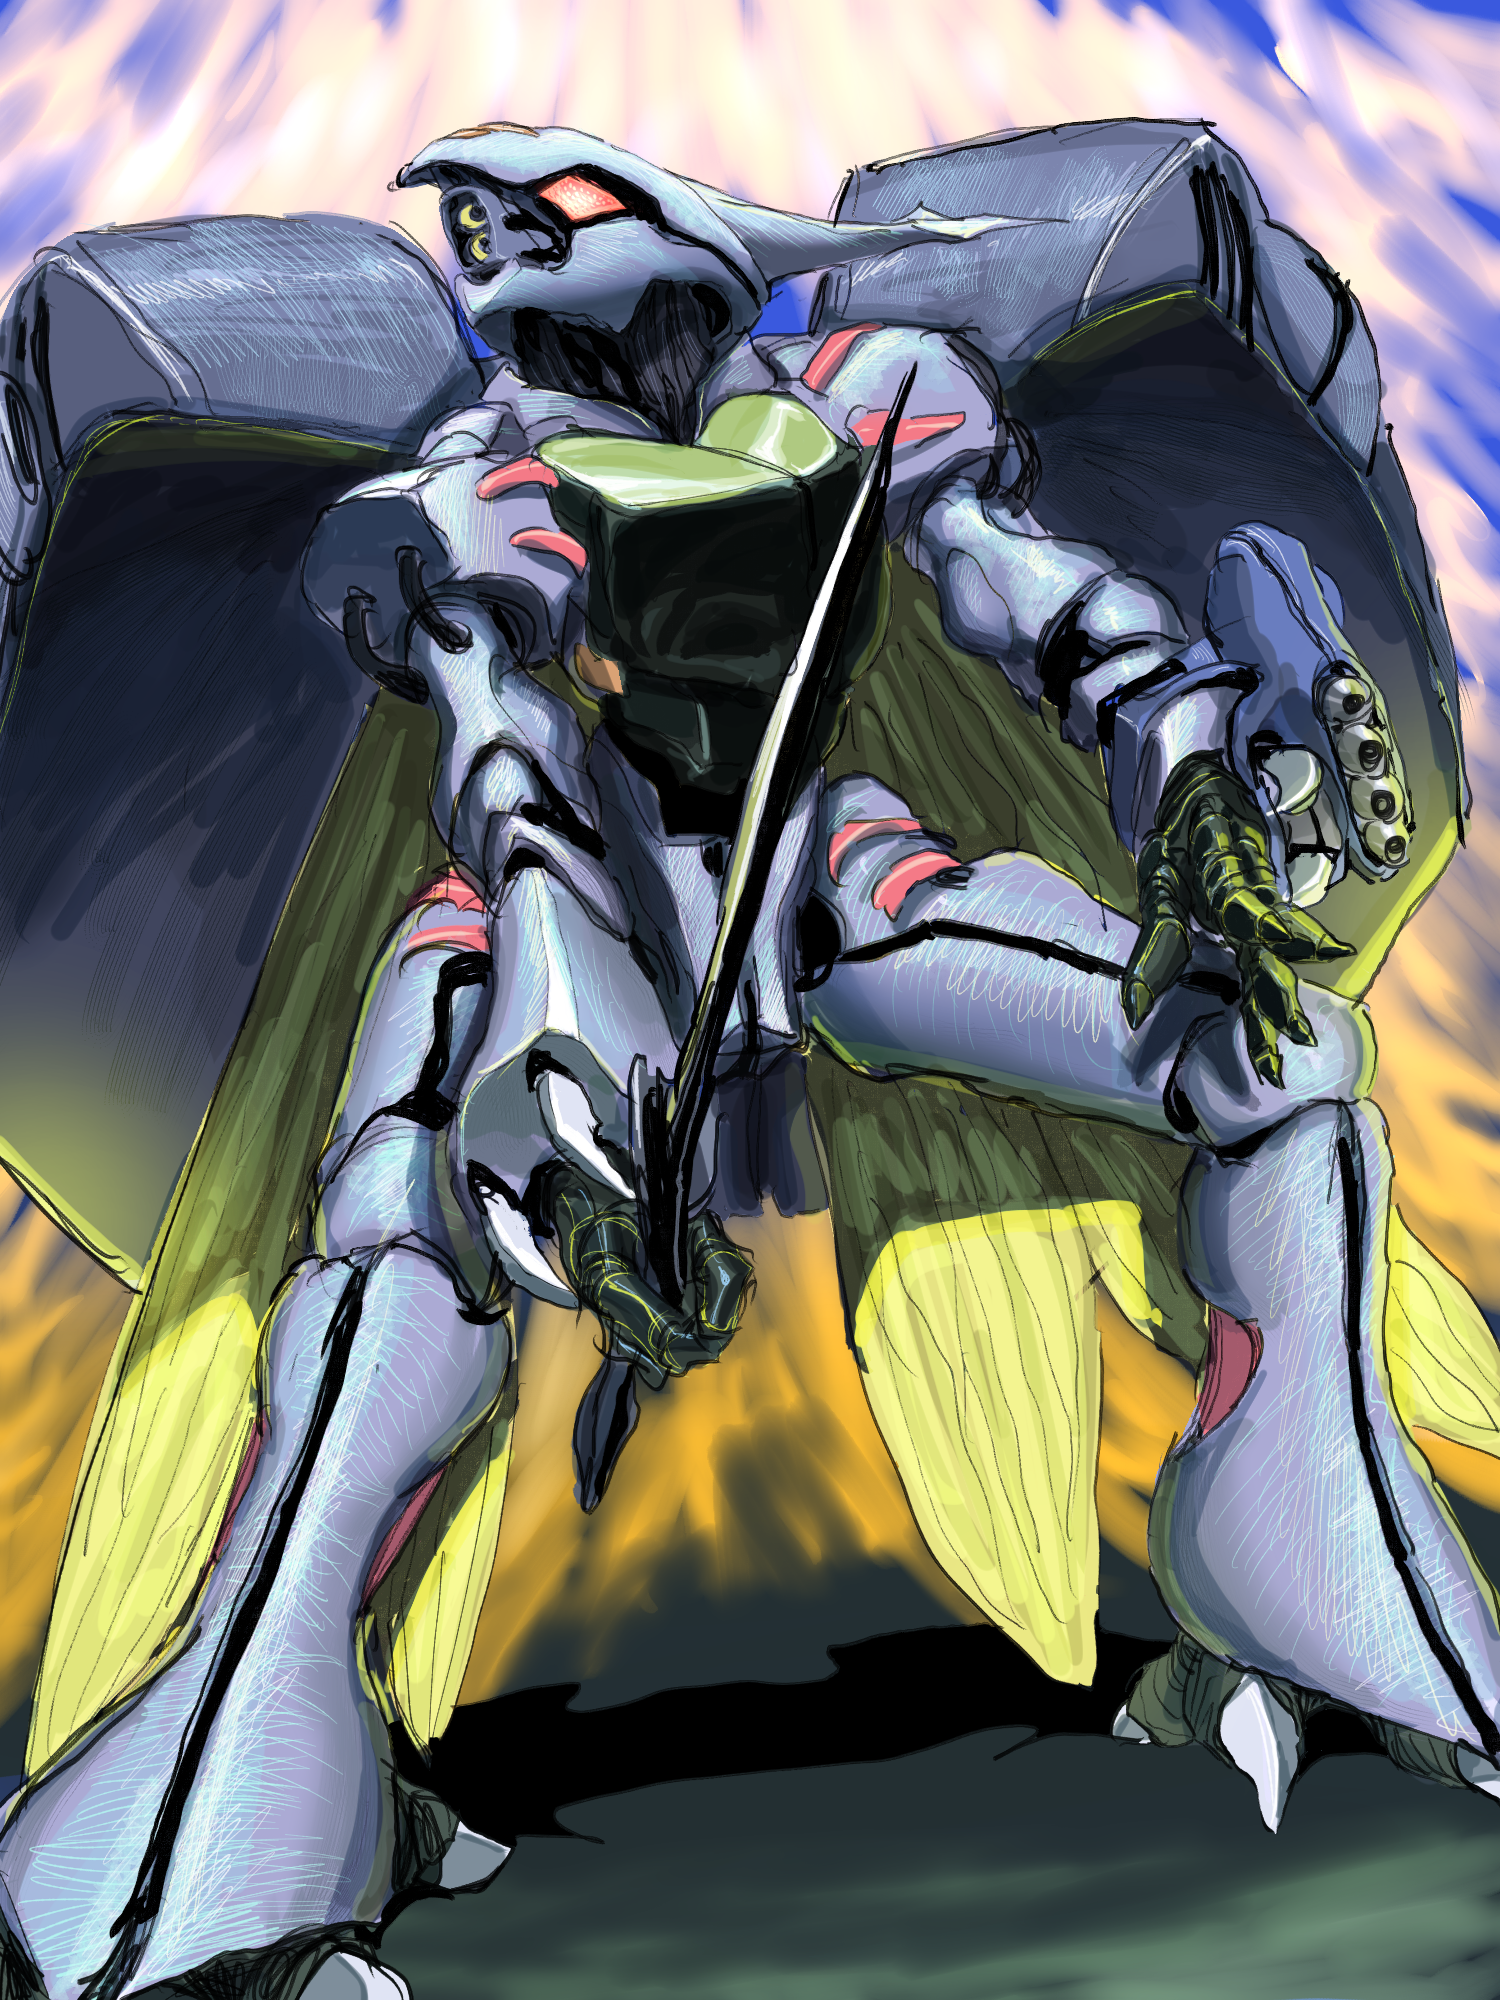 Anime 1500x2000 anime mechs Aura Battler Dunbine Dunbine Super Robot Taisen artwork digital art fan art